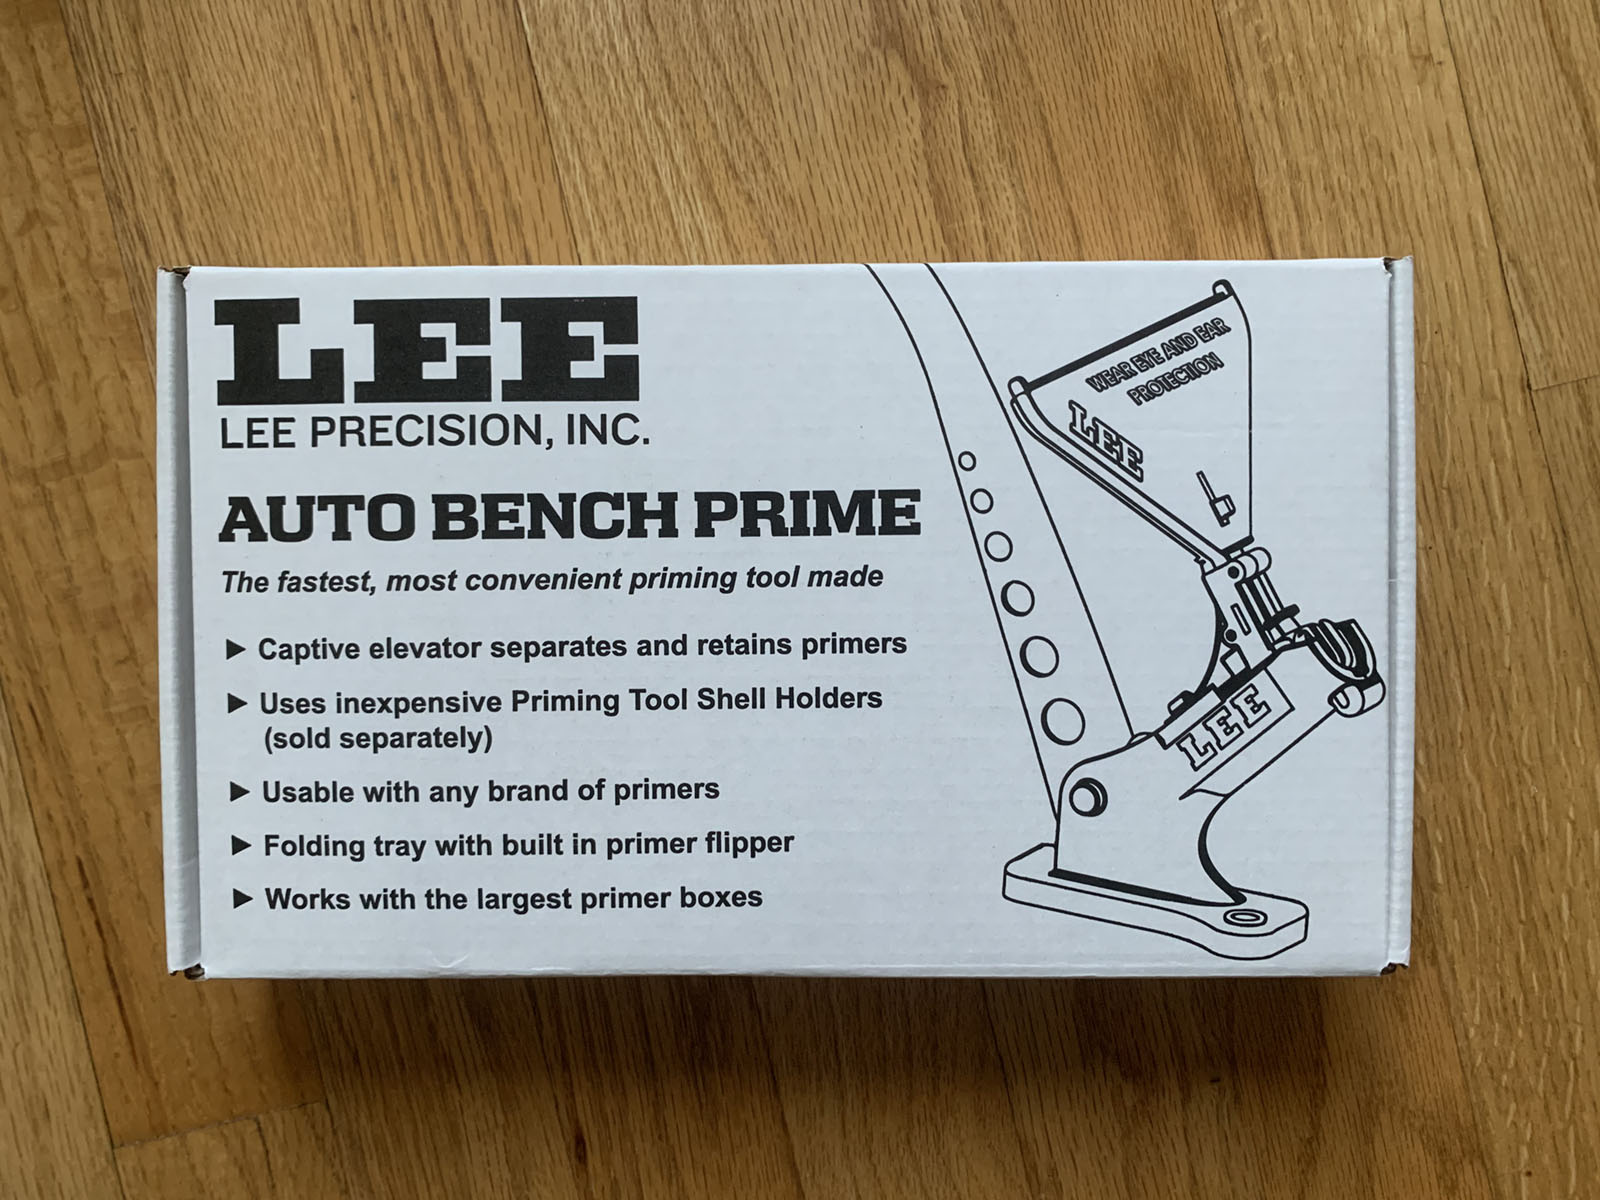 Lee Auto Bench Prime.jpg